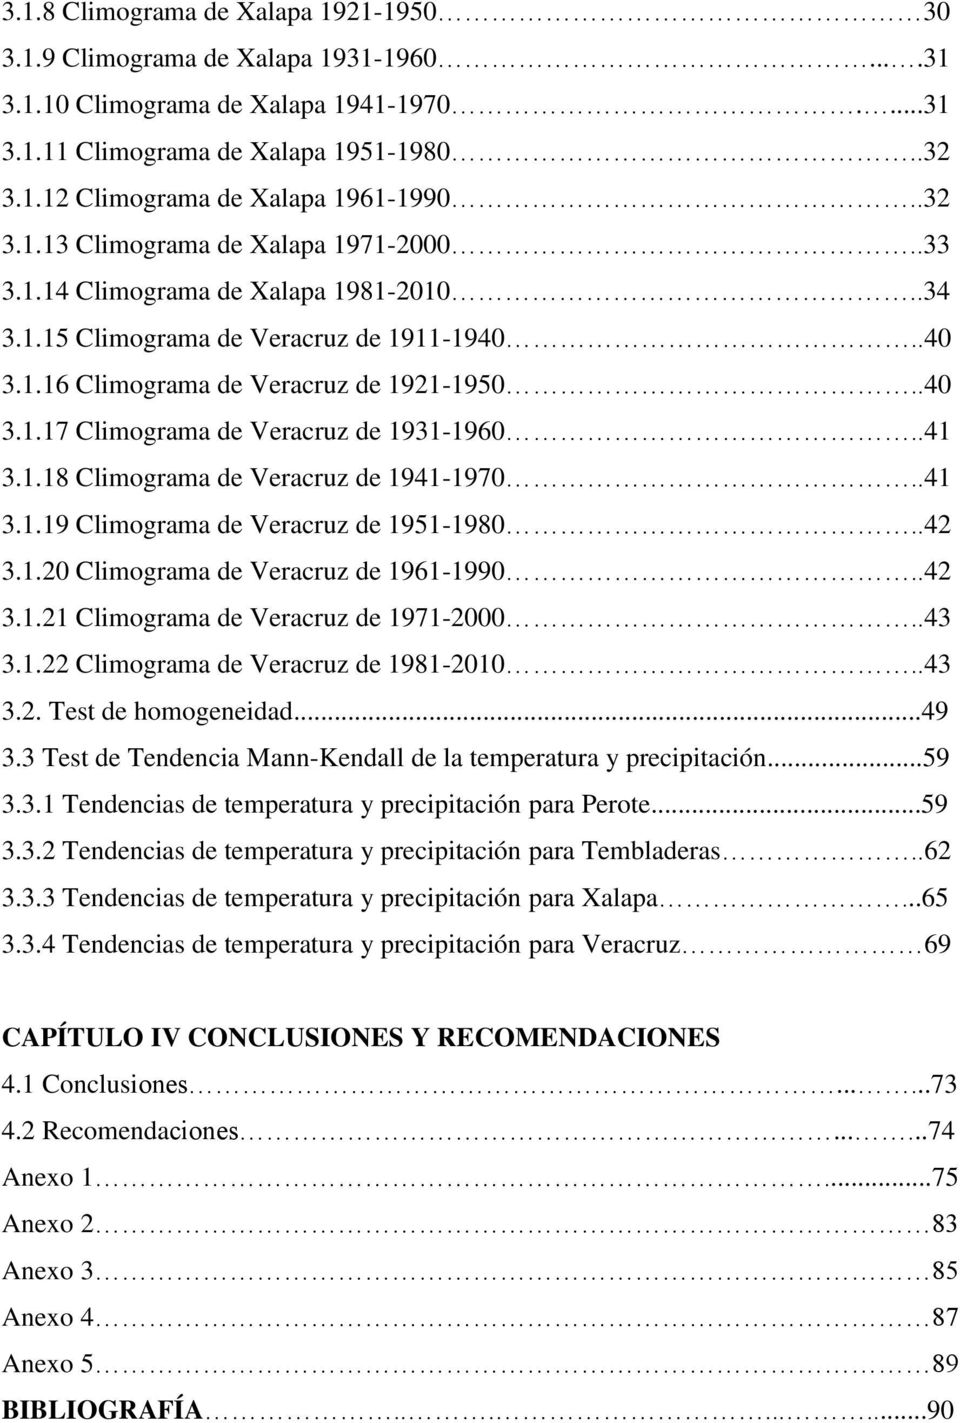 .41 3.1.18 Climograma de Veracruz de 1941-1970..41 3.1.19 Climograma de Veracruz de 1951-1980..42 3.1.20 Climograma de Veracruz de 1961-1990..42 3.1.21 Climograma de Veracruz de 1971-2000..43 3.1.22 Climograma de Veracruz de 1981-2010.